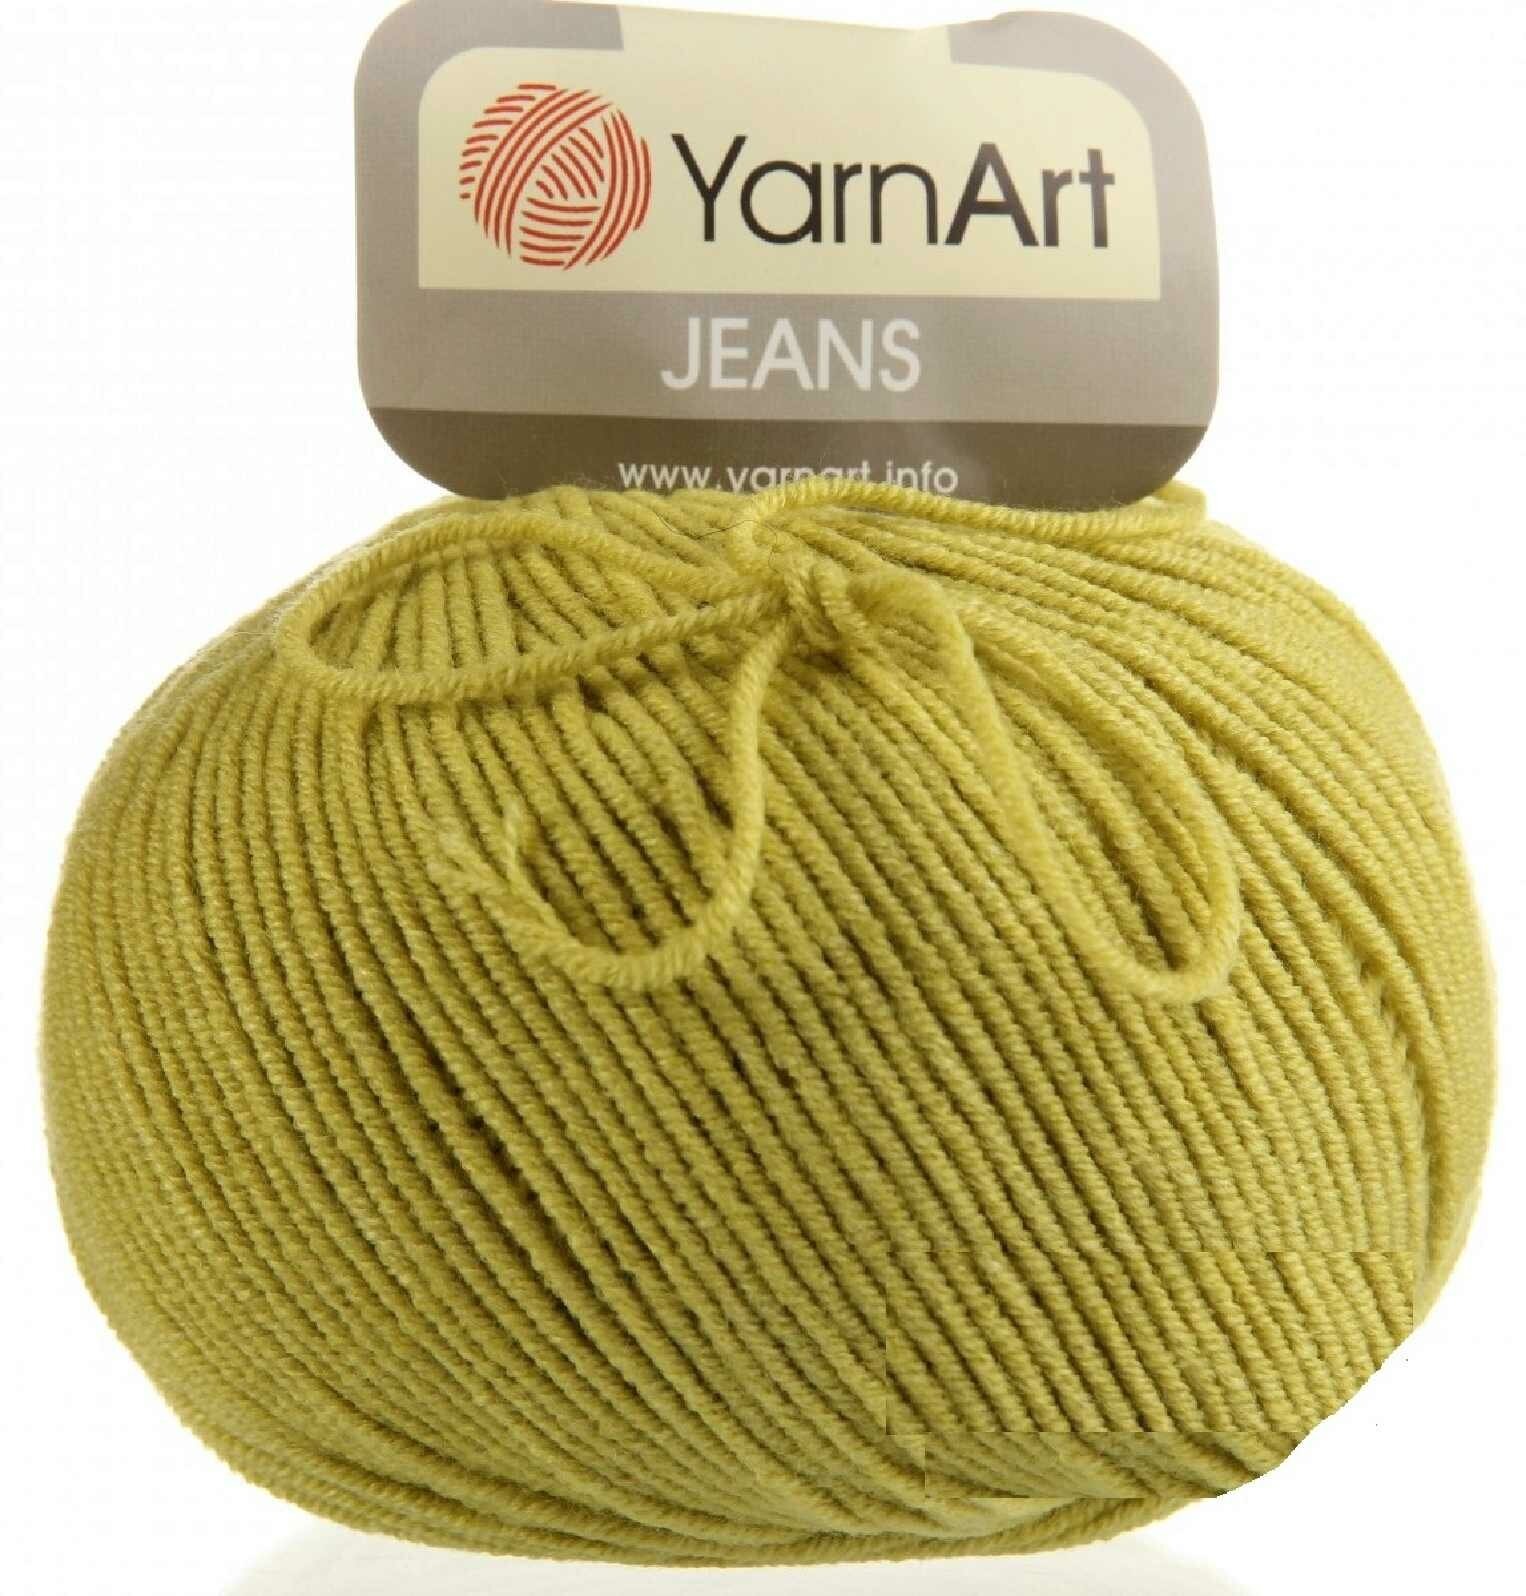 Пряжа YarnArt Jeans Ярнарт джинс Светло-зеленый (29) 3 мотка 50 г/160 м (45% акрил 55 хлопок)